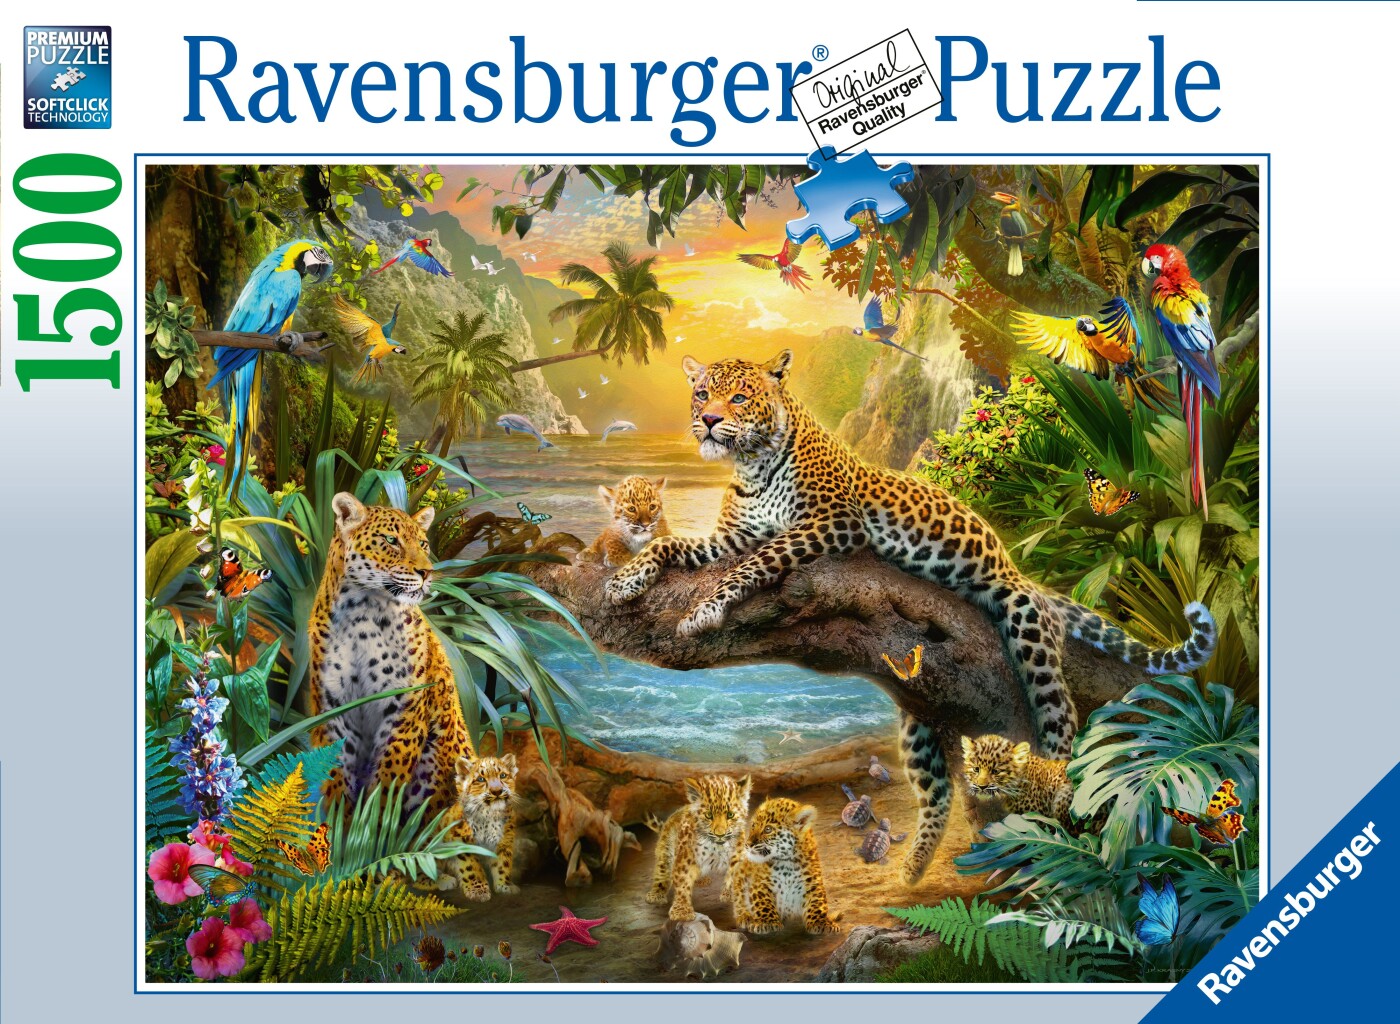 Se Ravensburger Puslespil - Leopard Familie I Junglen - 1500 Brikker hos Gucca.dk